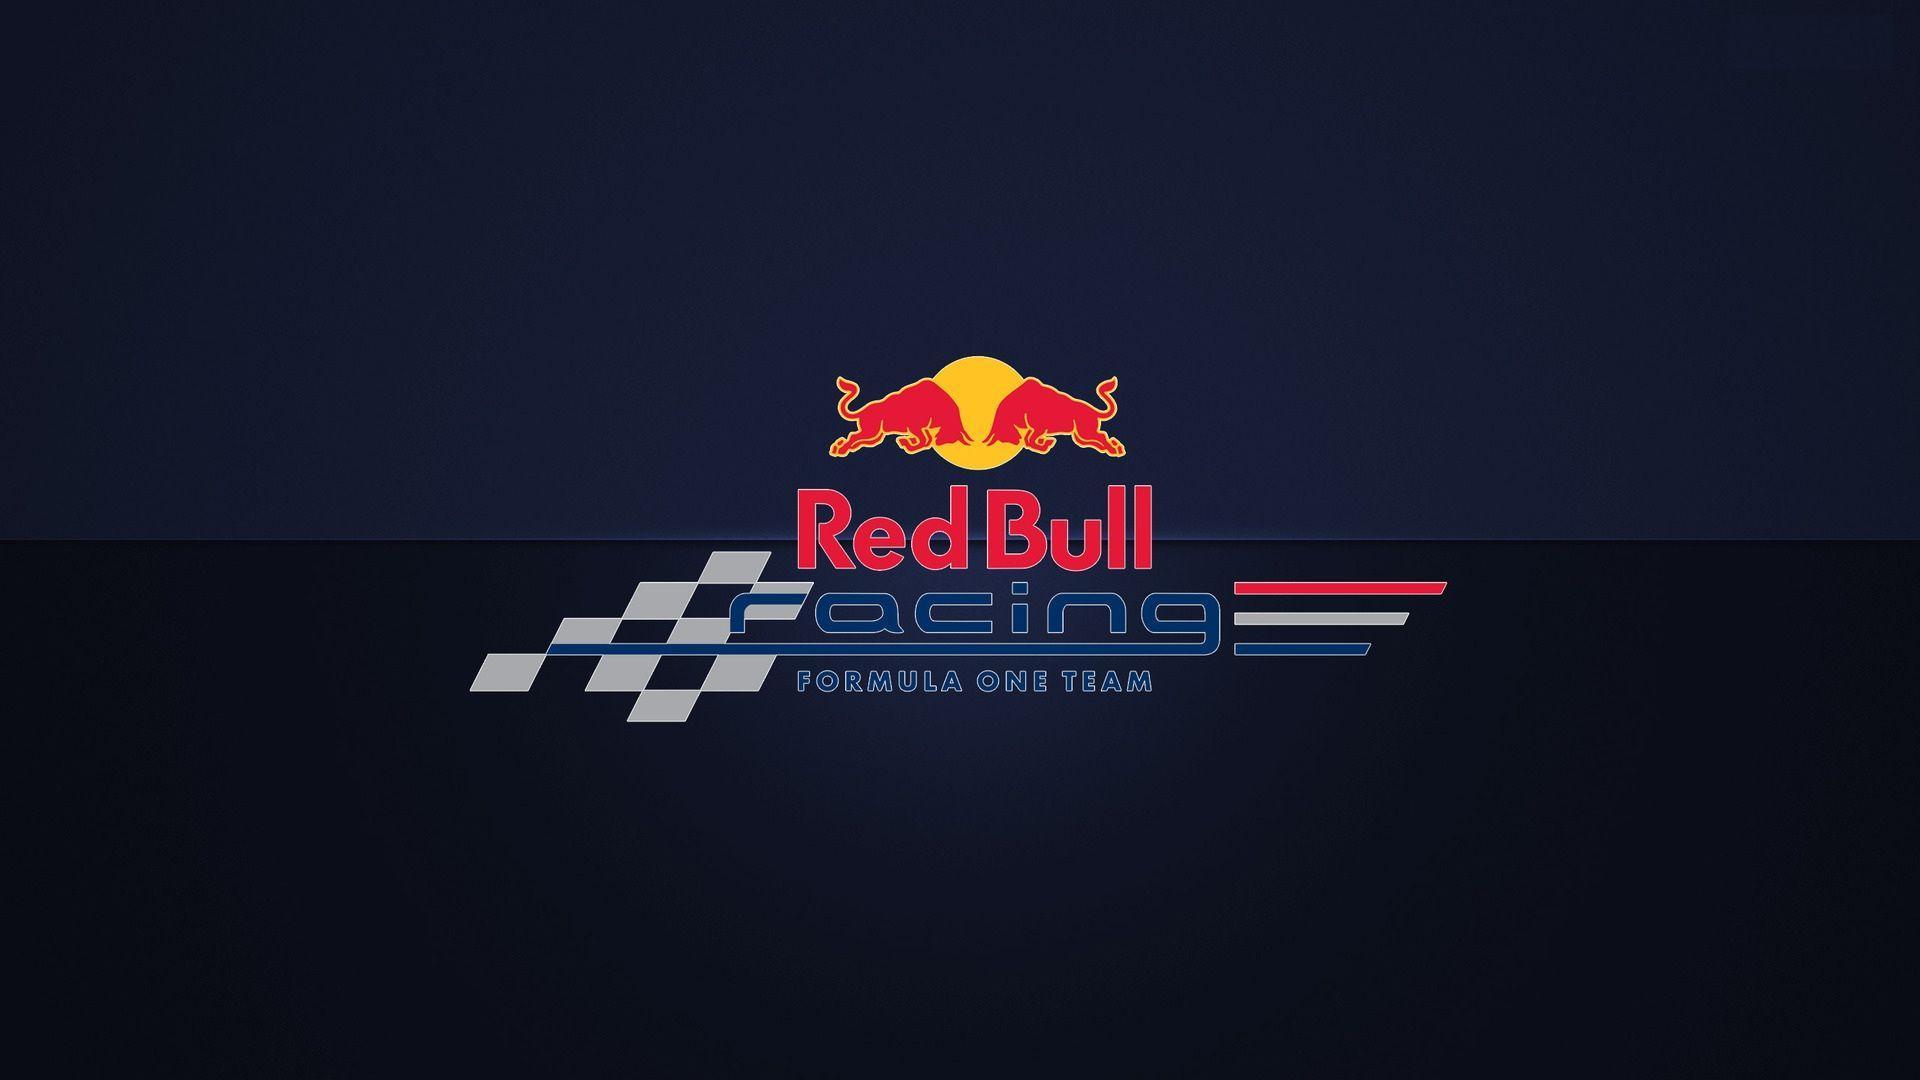 Red Bull Racing Logo - Red Bull Logo Wallpapers - Wallpaper Cave